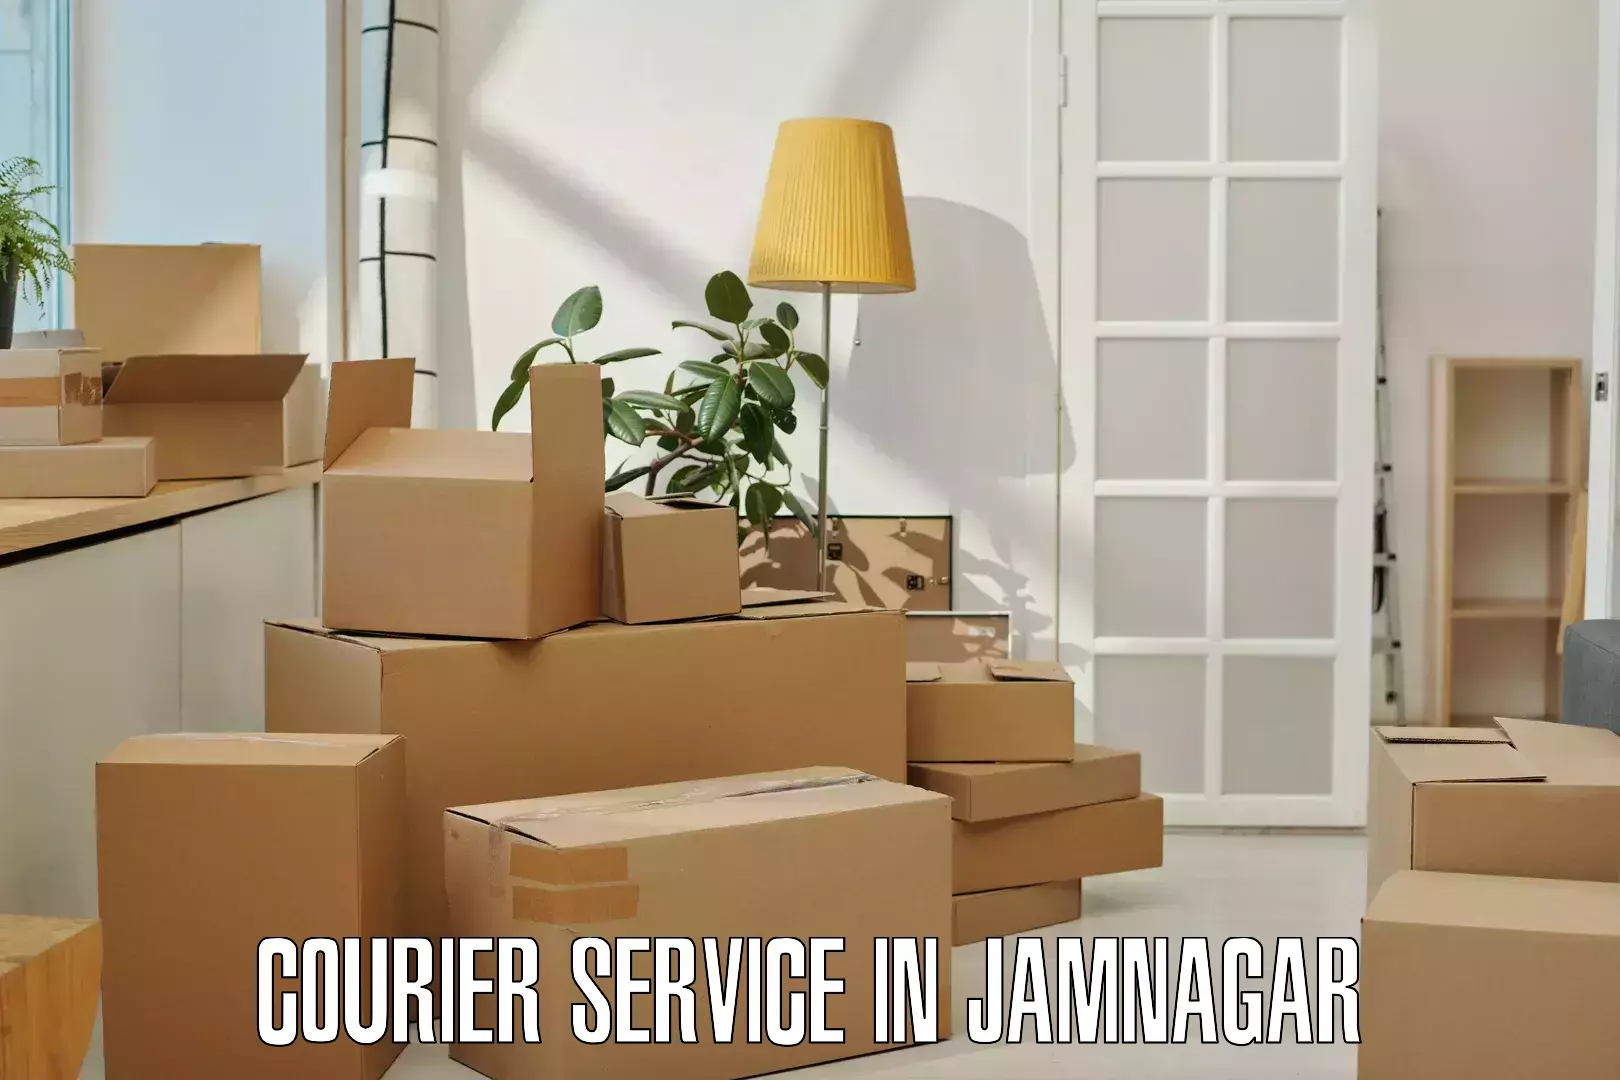 Urgent courier needs in Jamnagar